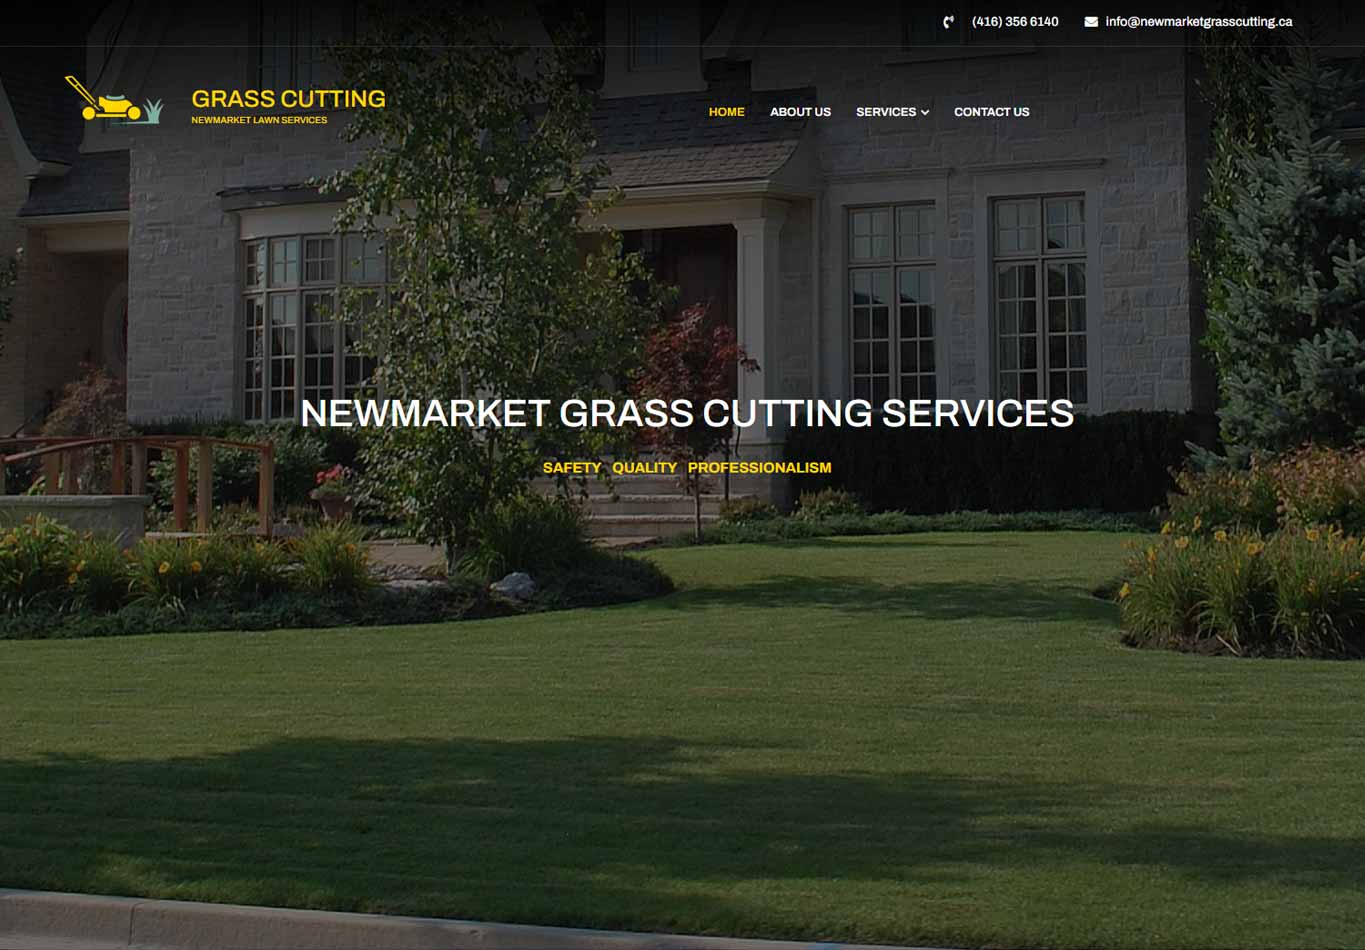 NEWMARKET GRASS CUTTING SERVICES